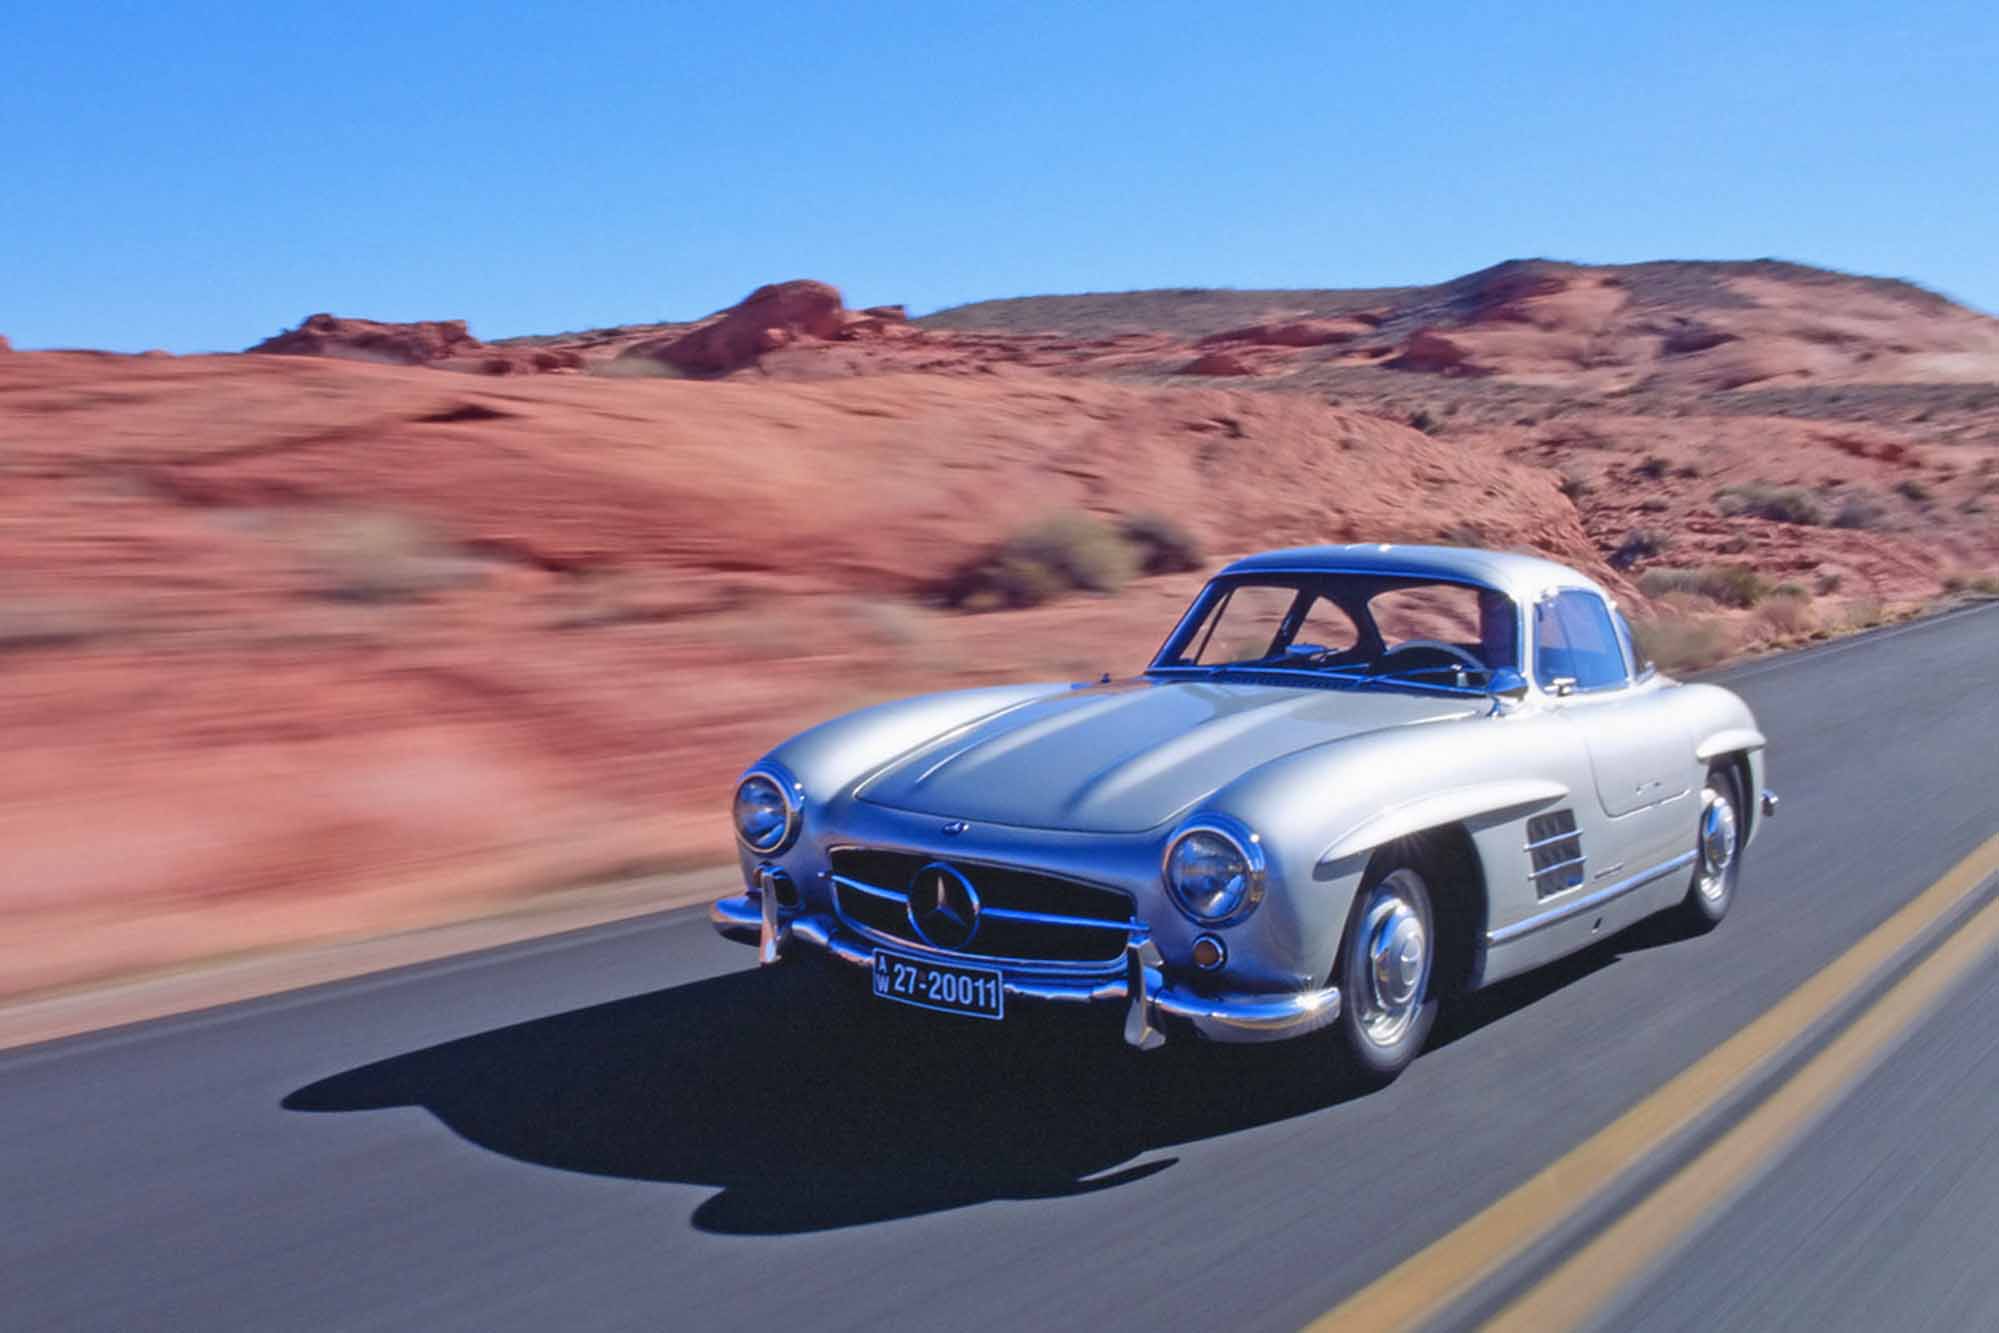 Image principale de l'actu: Mercedes 300 sl une legende de lautomobile 